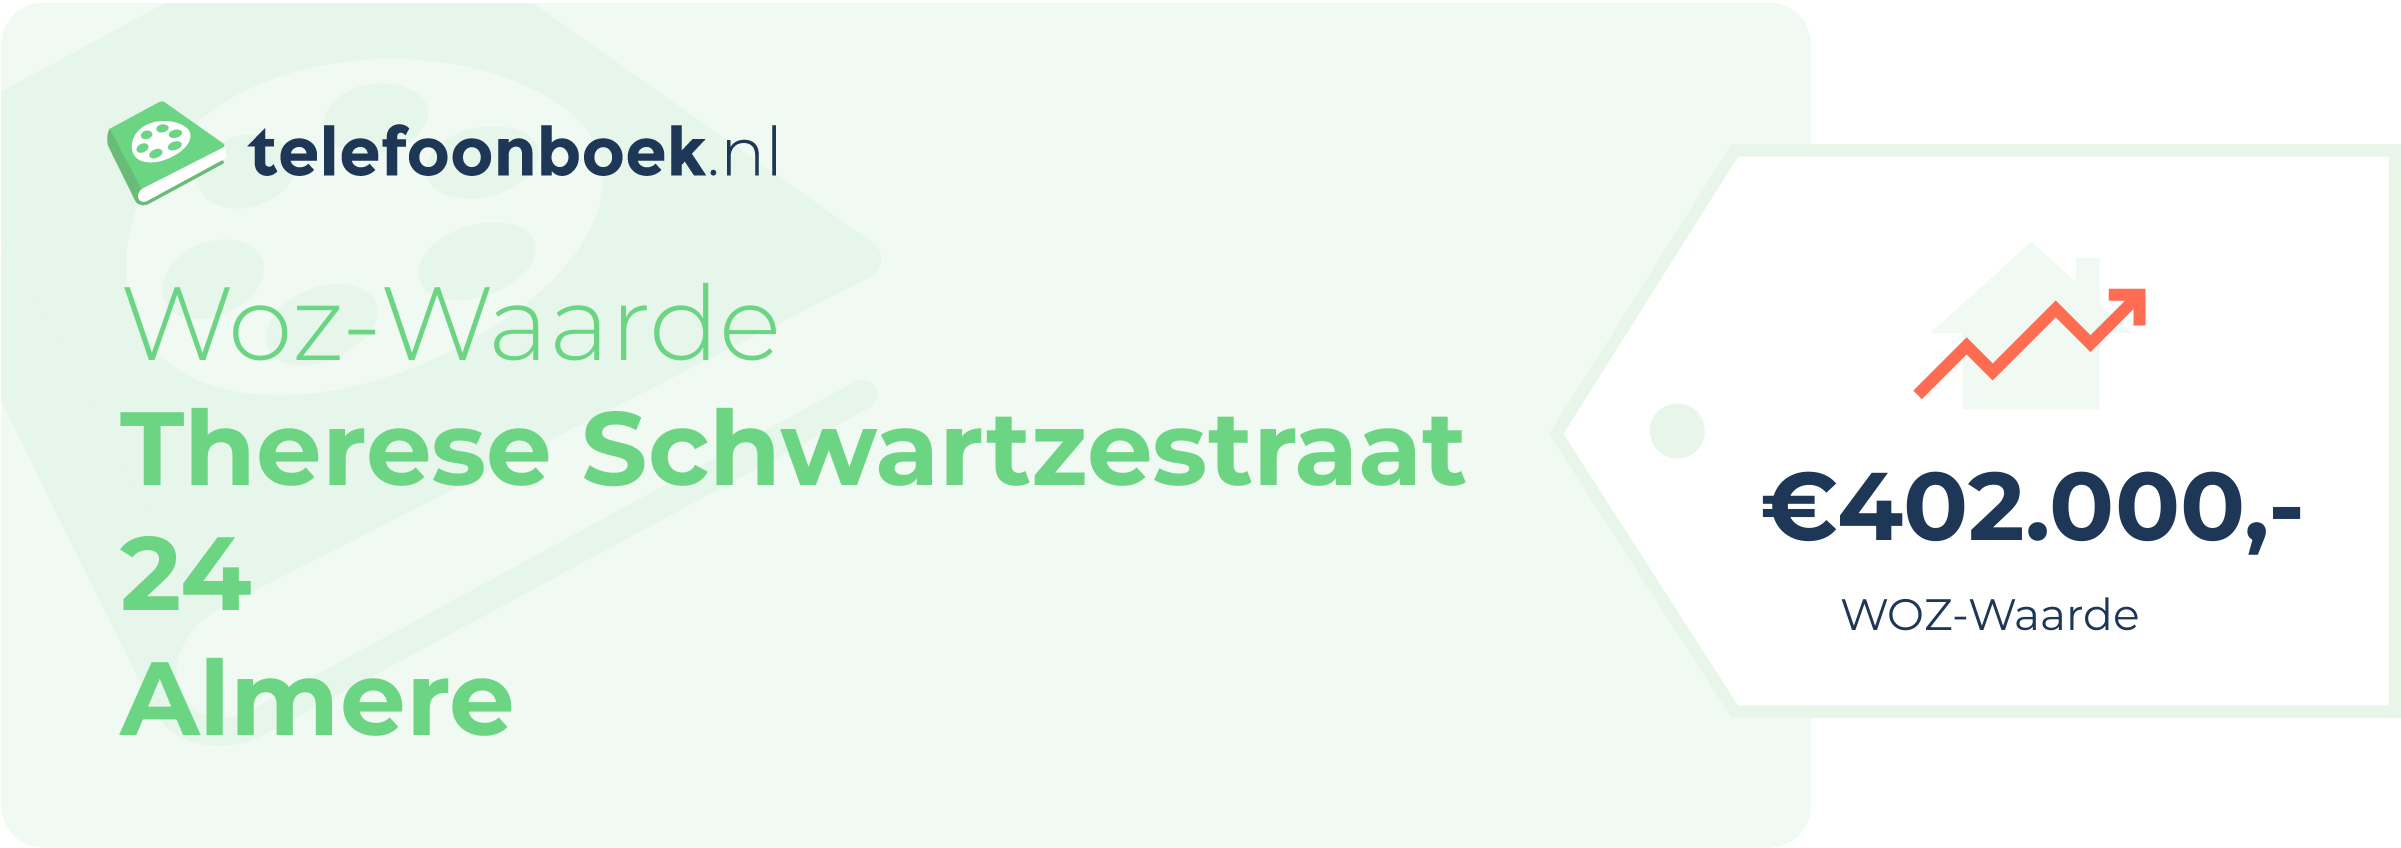 WOZ-waarde Therese Schwartzestraat 24 Almere